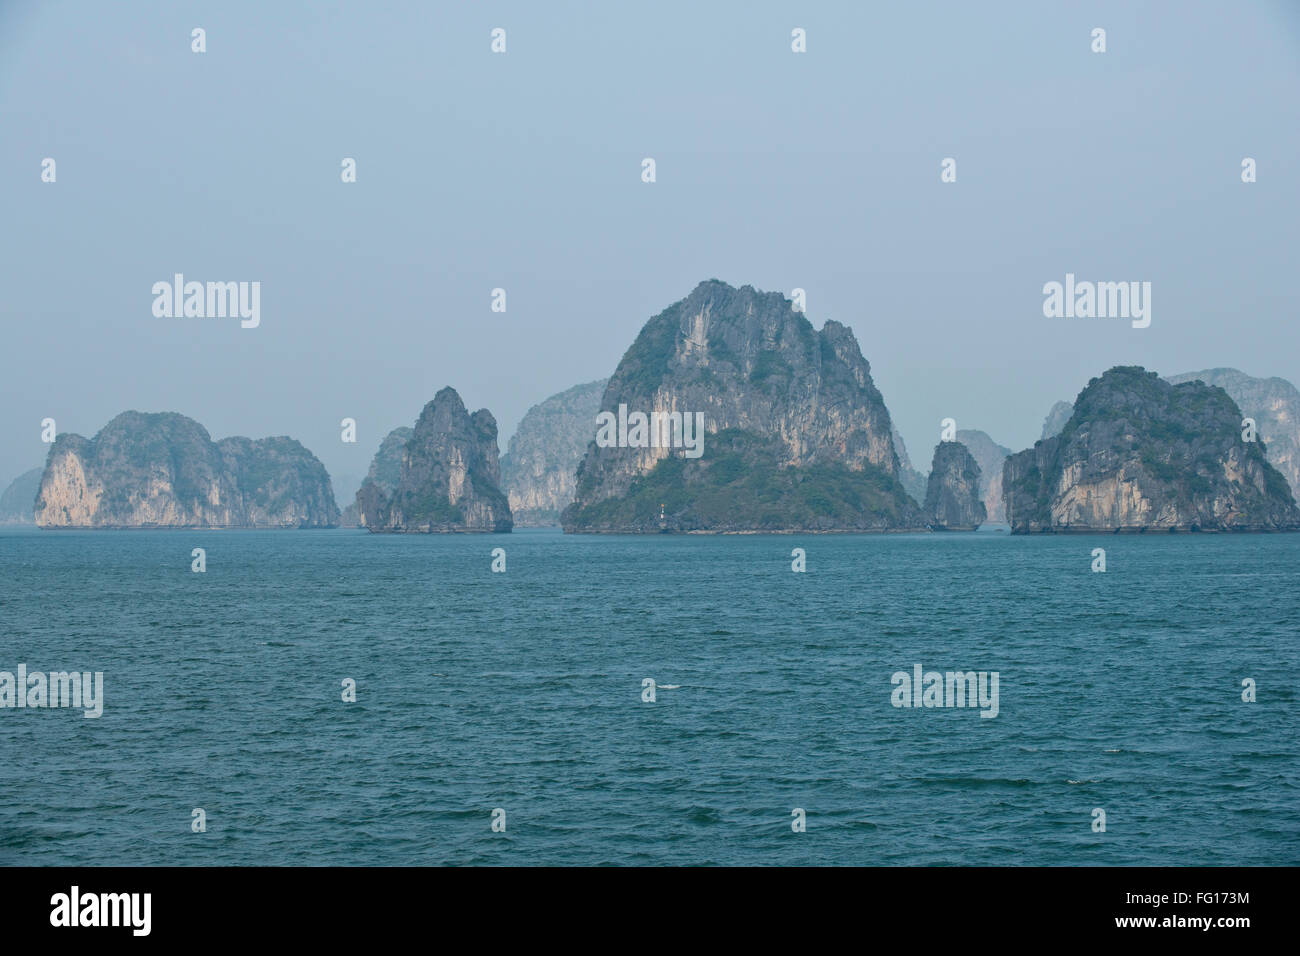 Misty image de karsts calcaire ou îles sortant de la mer dans la baie d'Halong, Vietnam du Nord, janvier Banque D'Images